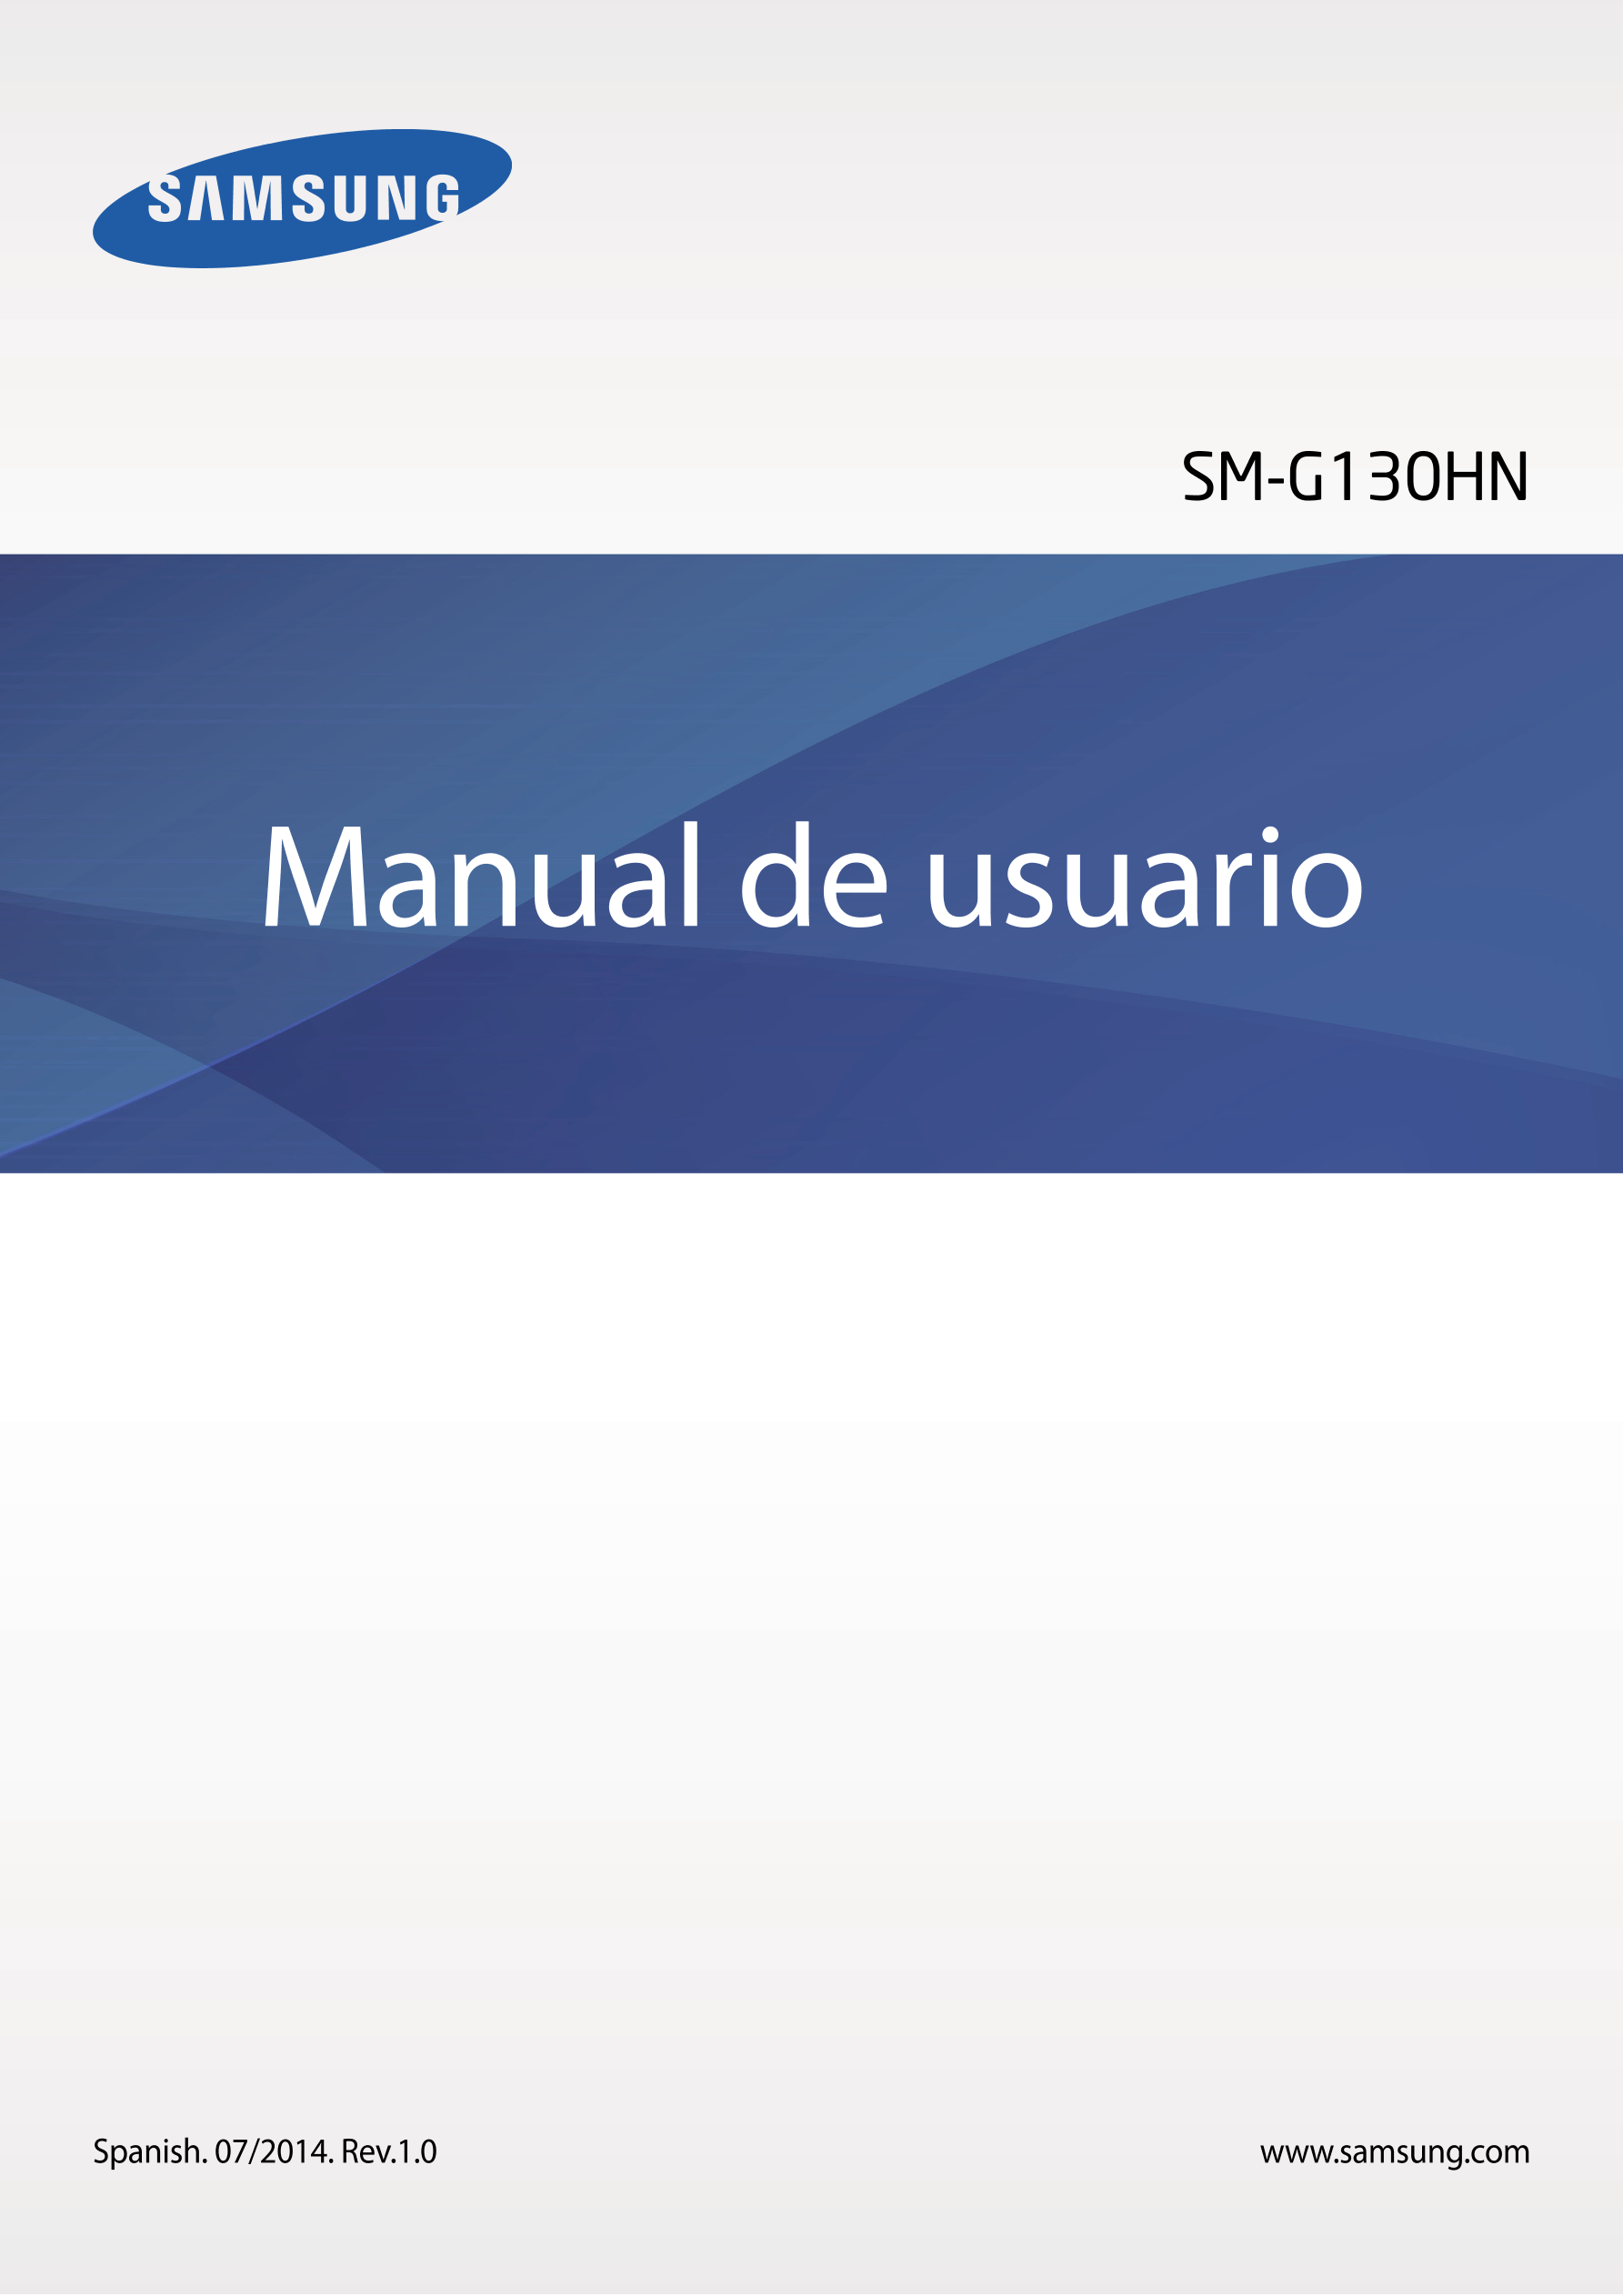 SM-G130HN
Manual de usuario
Spanish. 07/2014. Rev.1.0 www.samsung.com